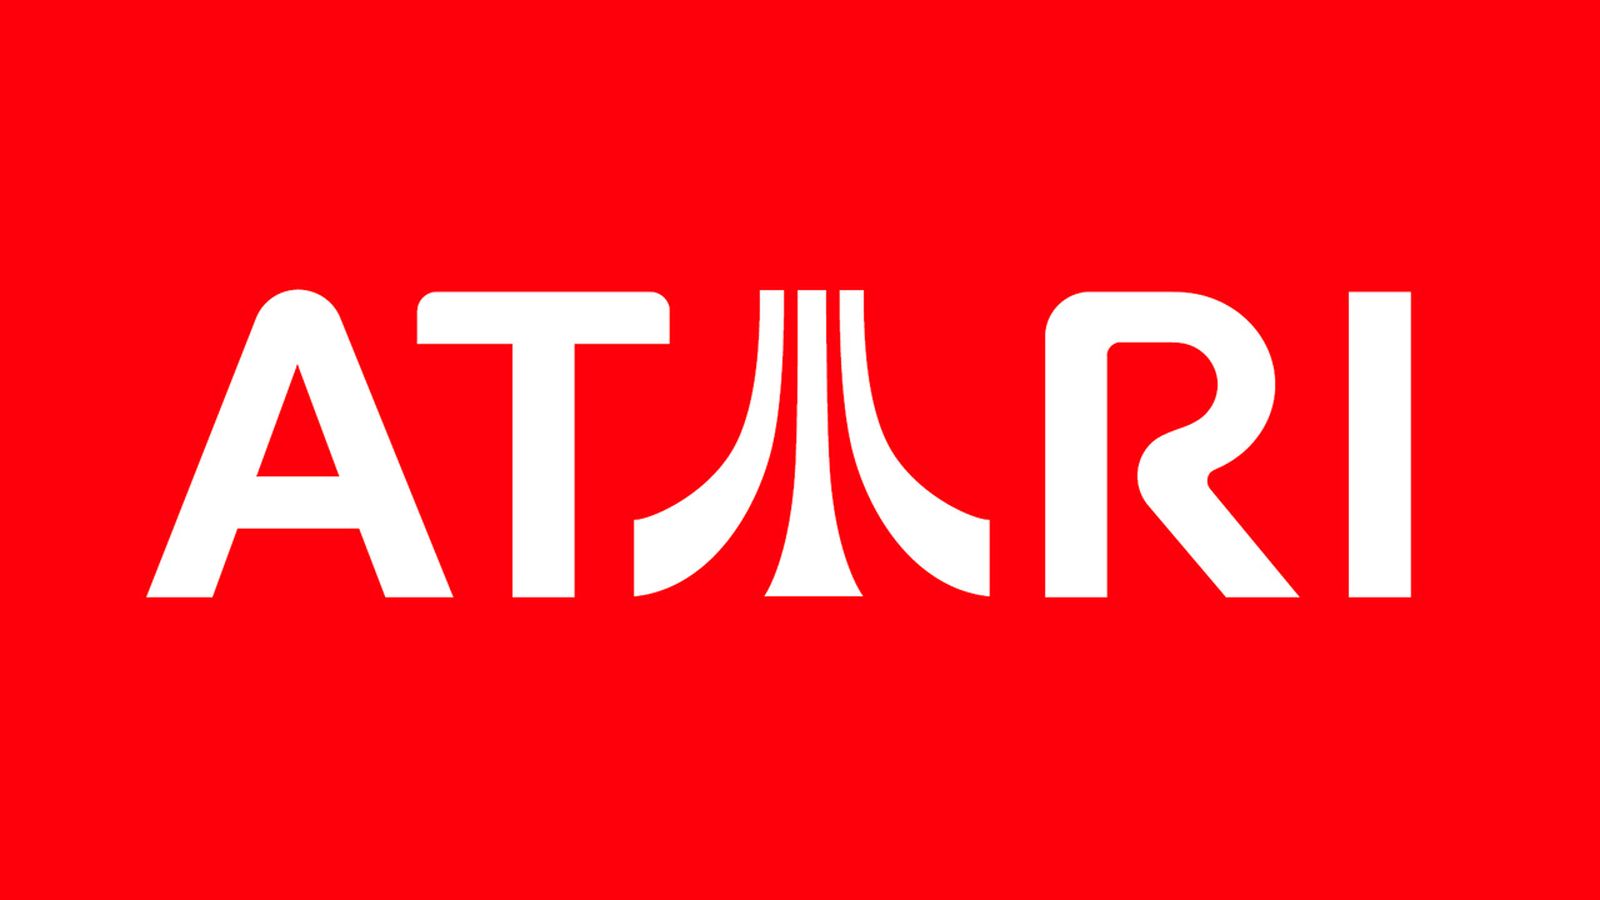 Images of Atari | 1600x900